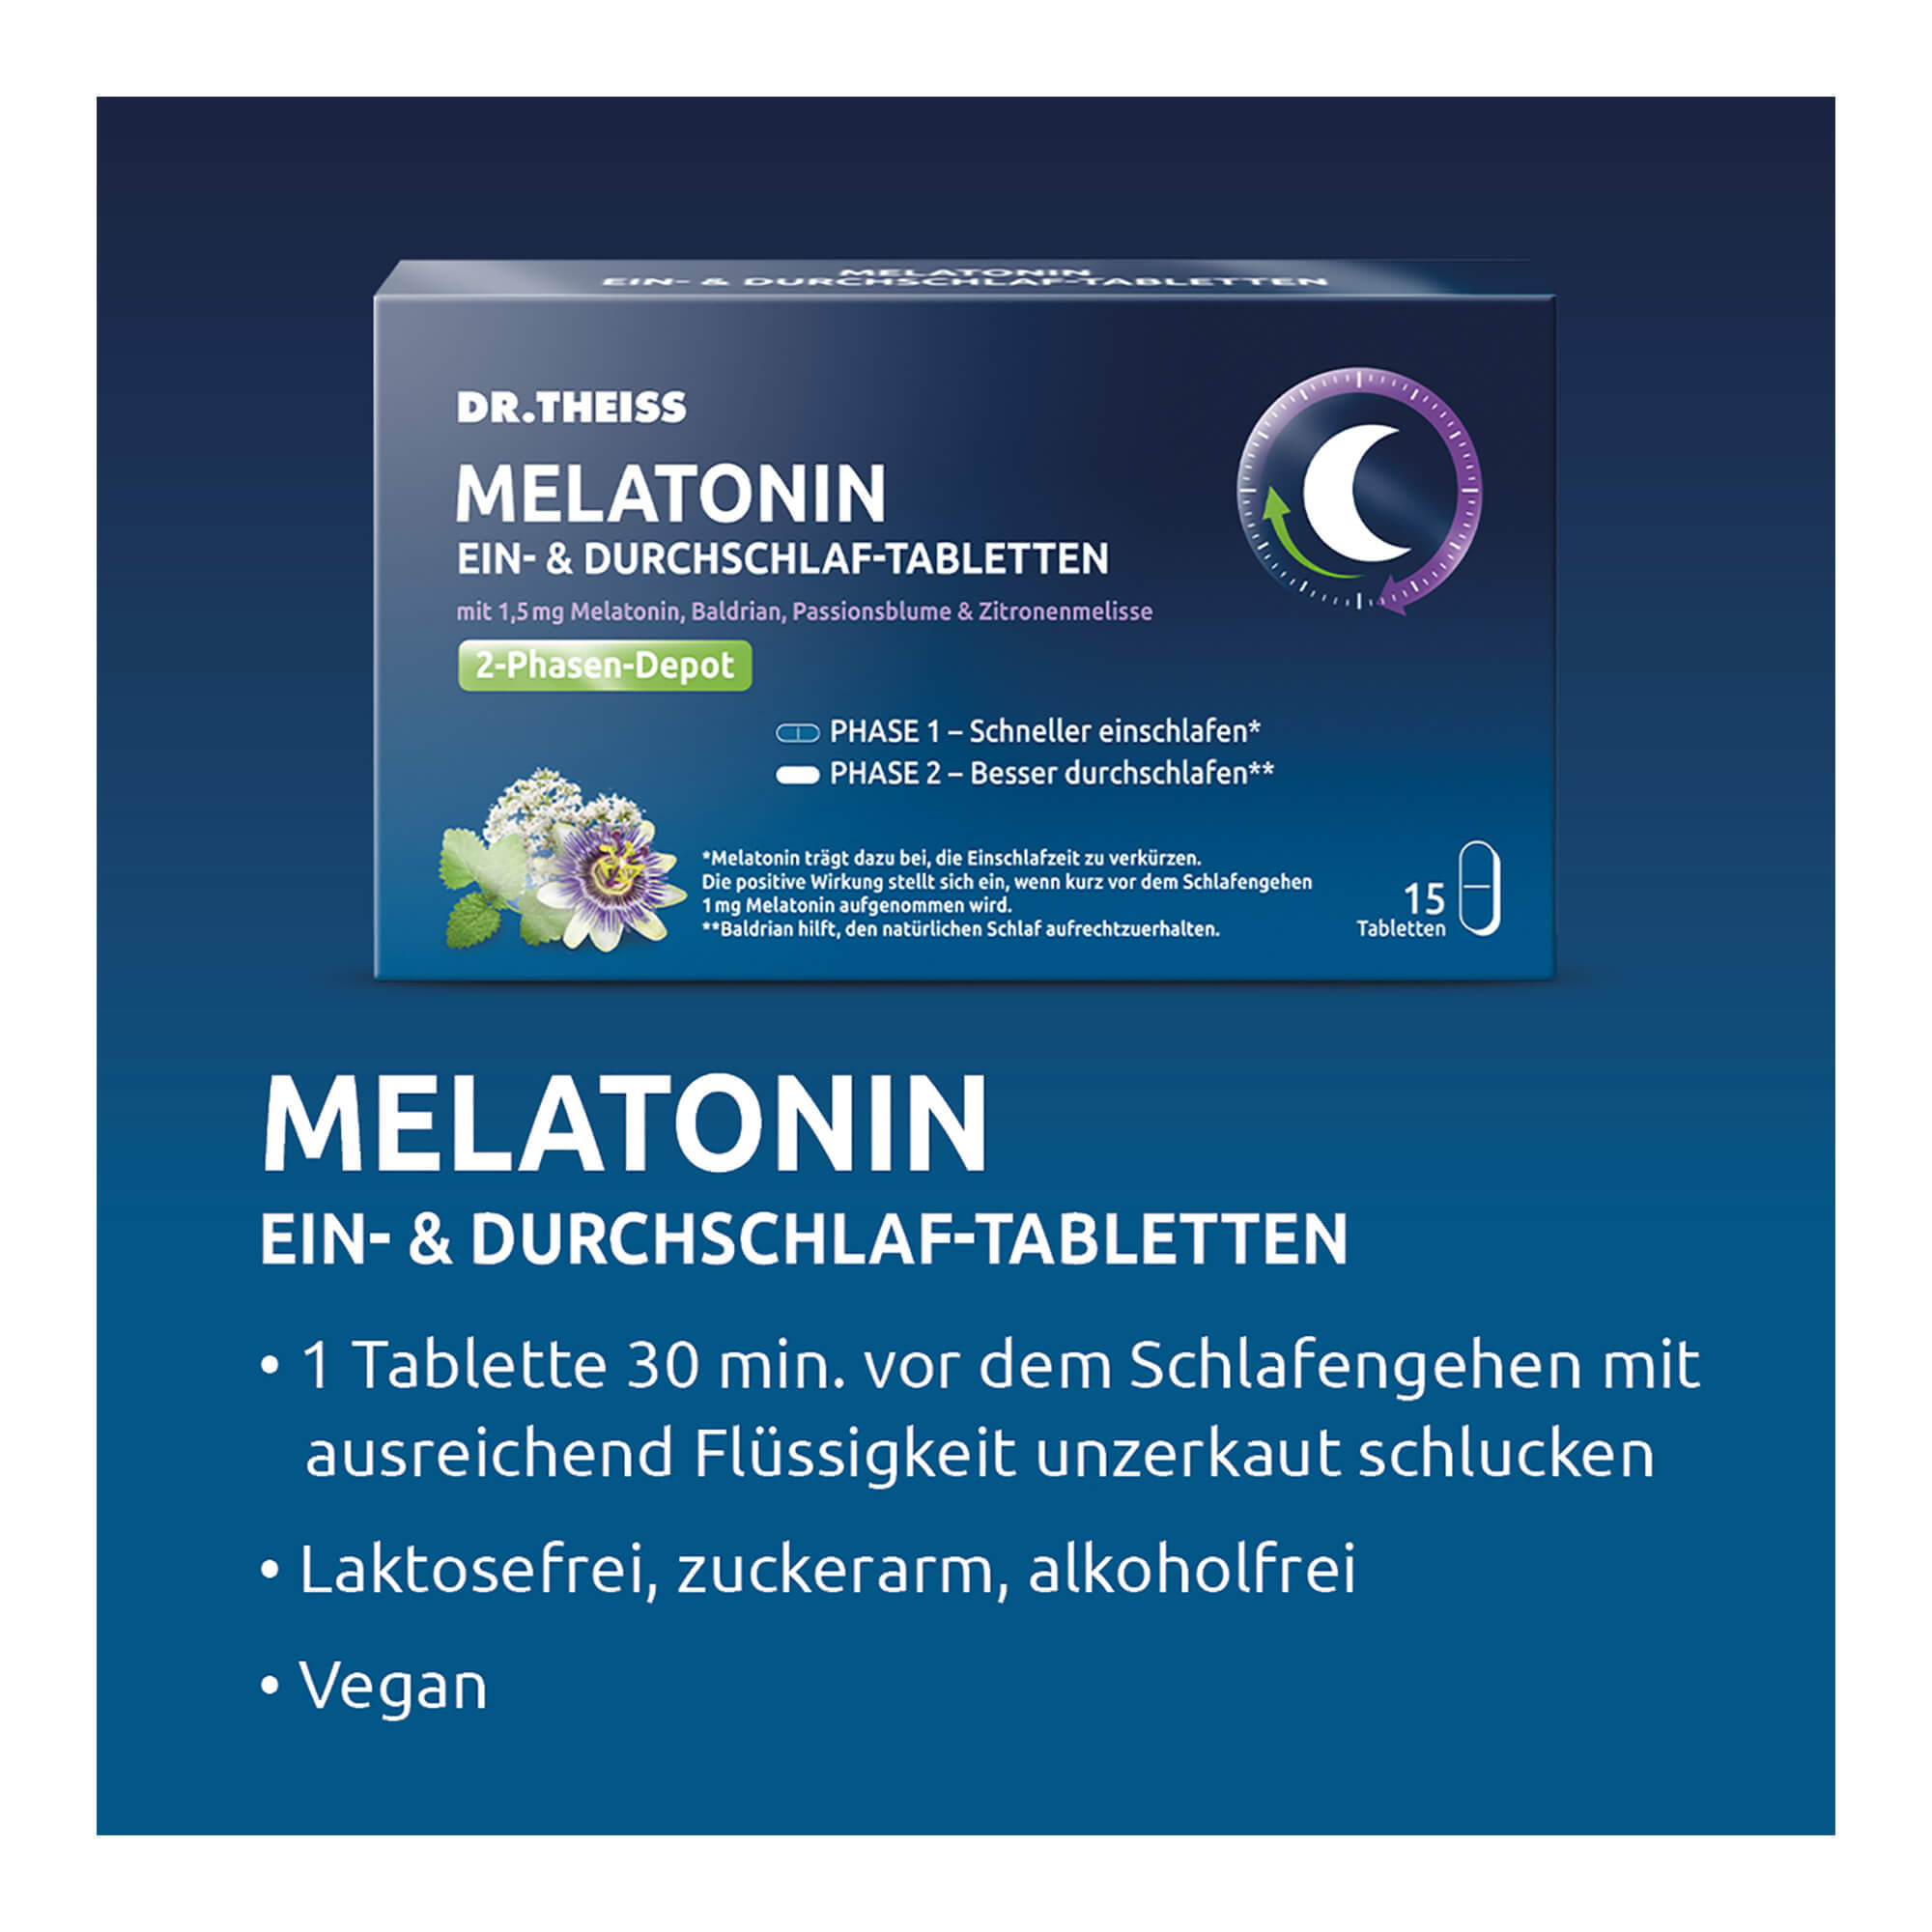 Dr. Theiss Melatonin Ein- & Durchschlaf-Tabletten Anwendung